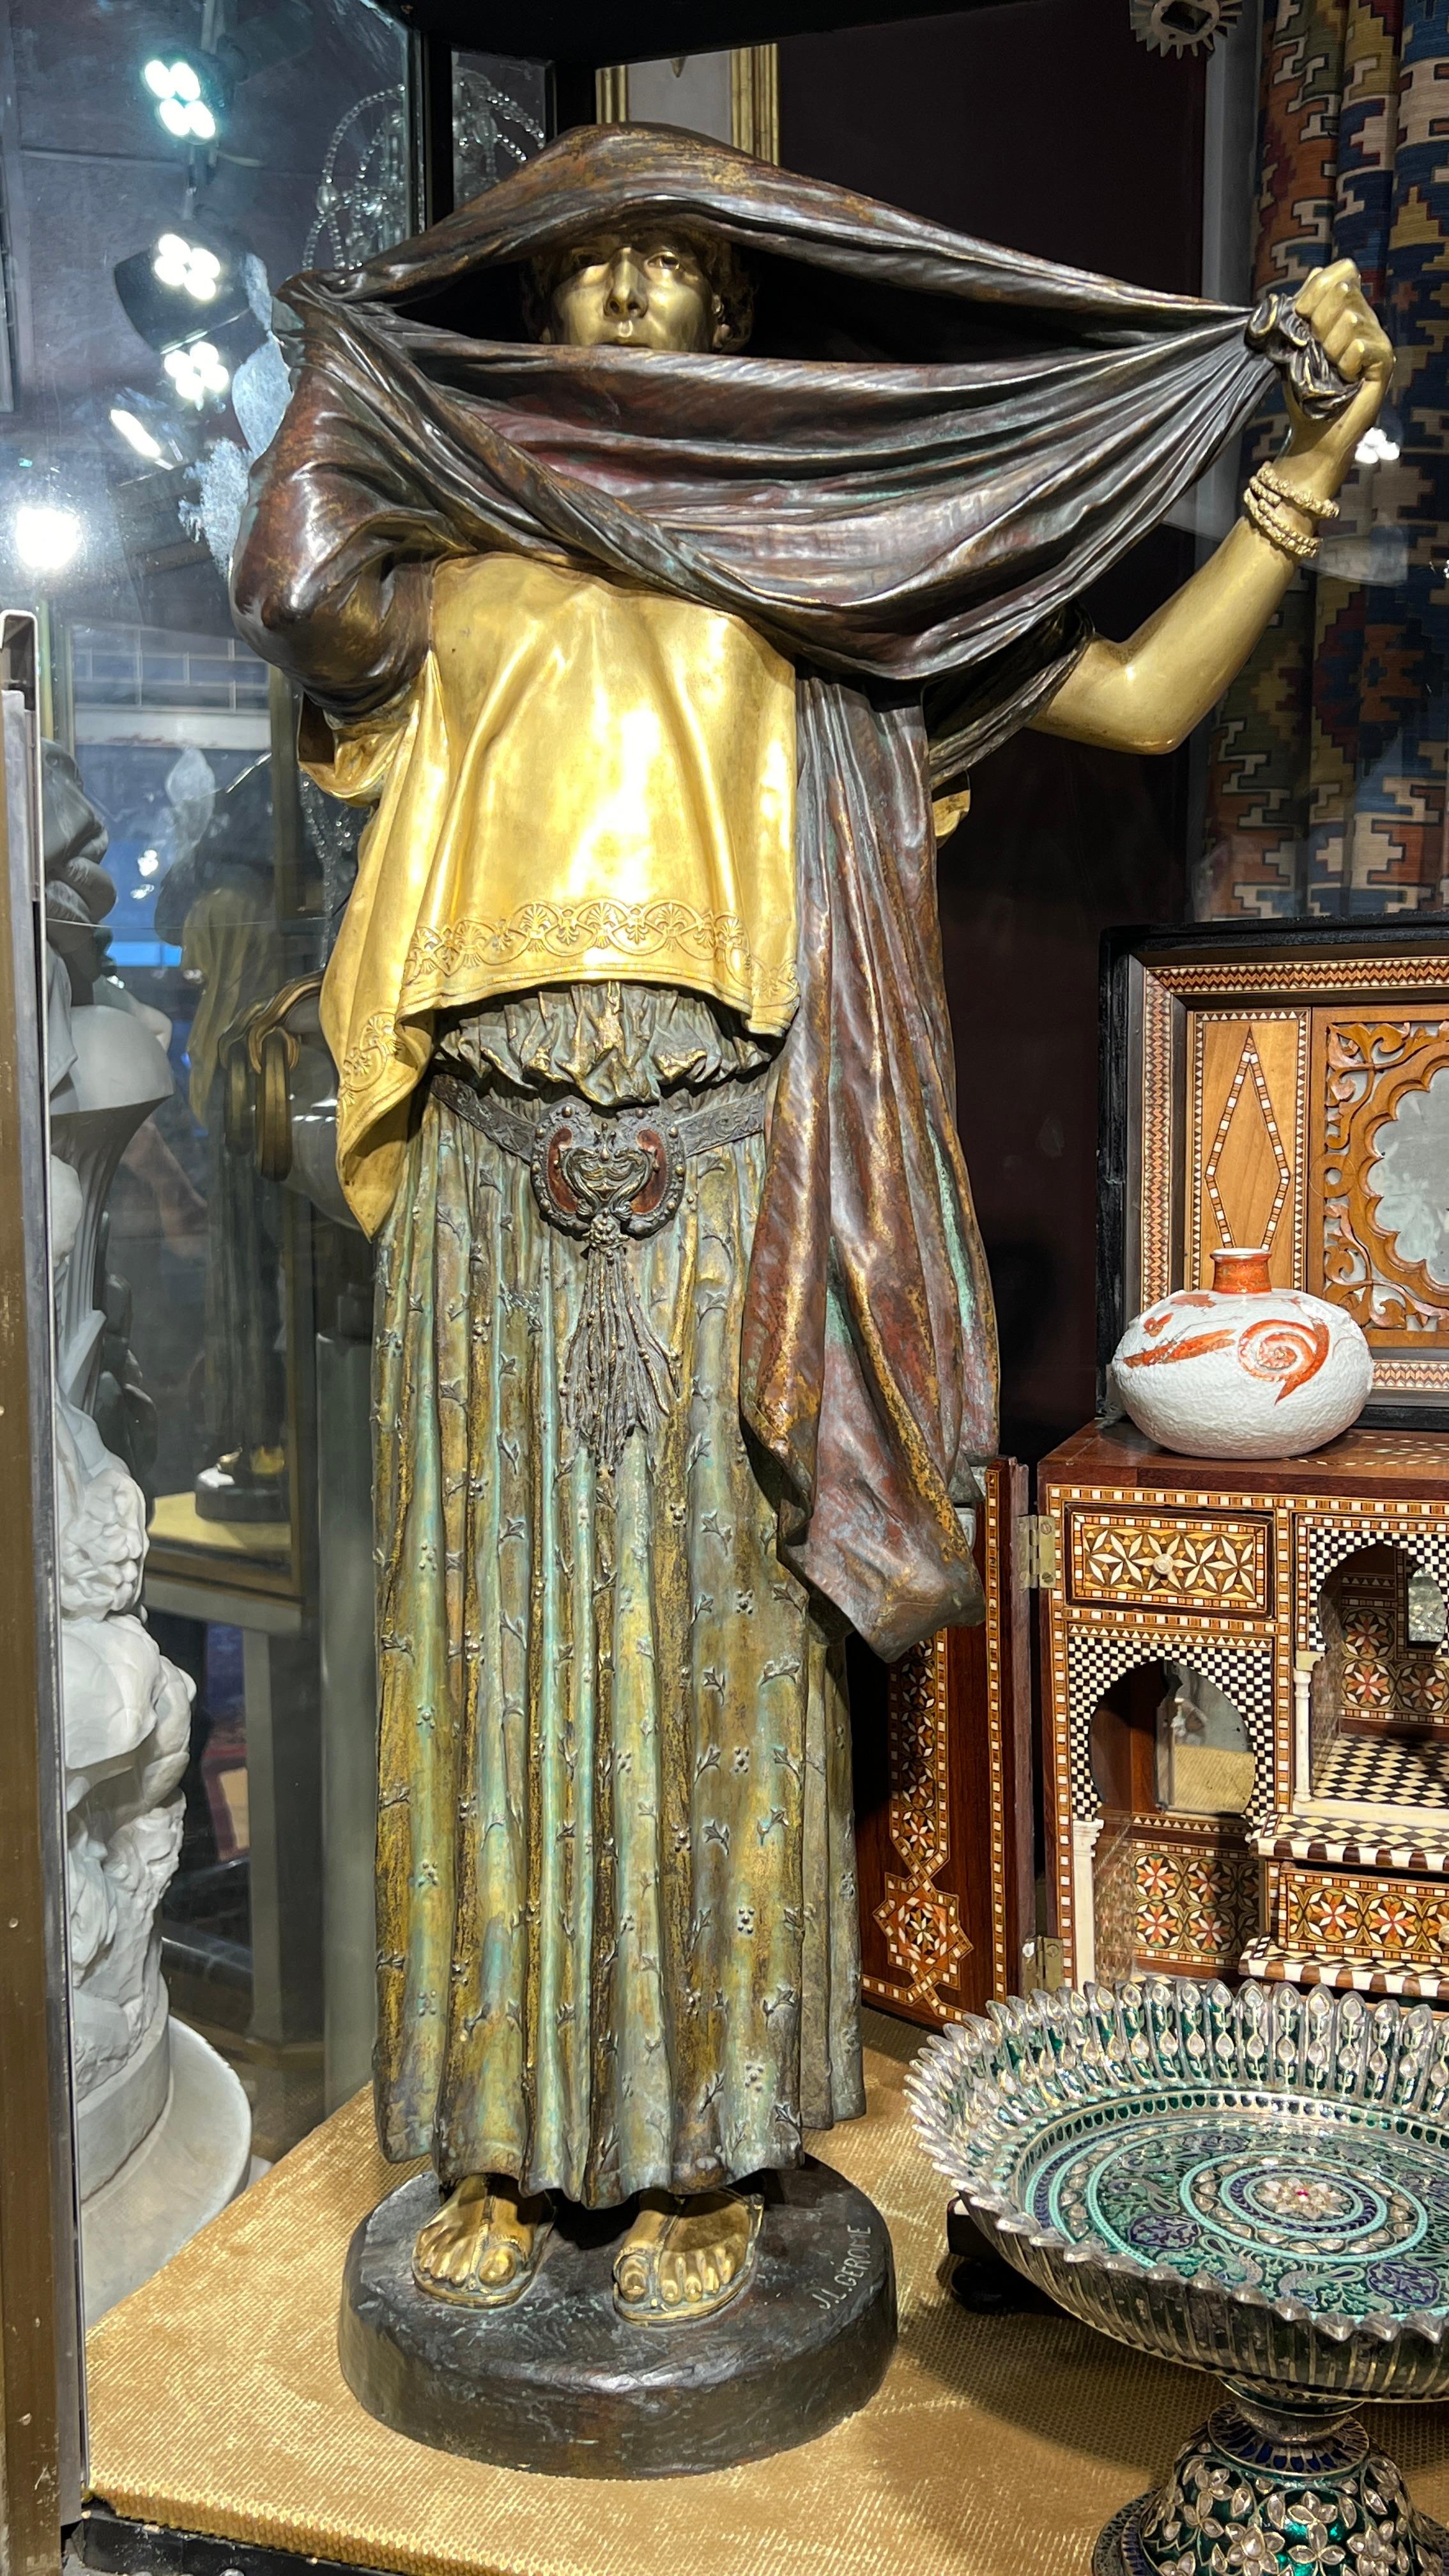 Notre statue en bronze de La Femme au Voile a été fondue par Siot-Decauville, à Paris, d'après le modèle original de Jean Leon Gerome (1824-1904).  D'une hauteur de 33 3/4 pouces (85,7 cm), avec une belle patine et des surfaces partiellement dorées,